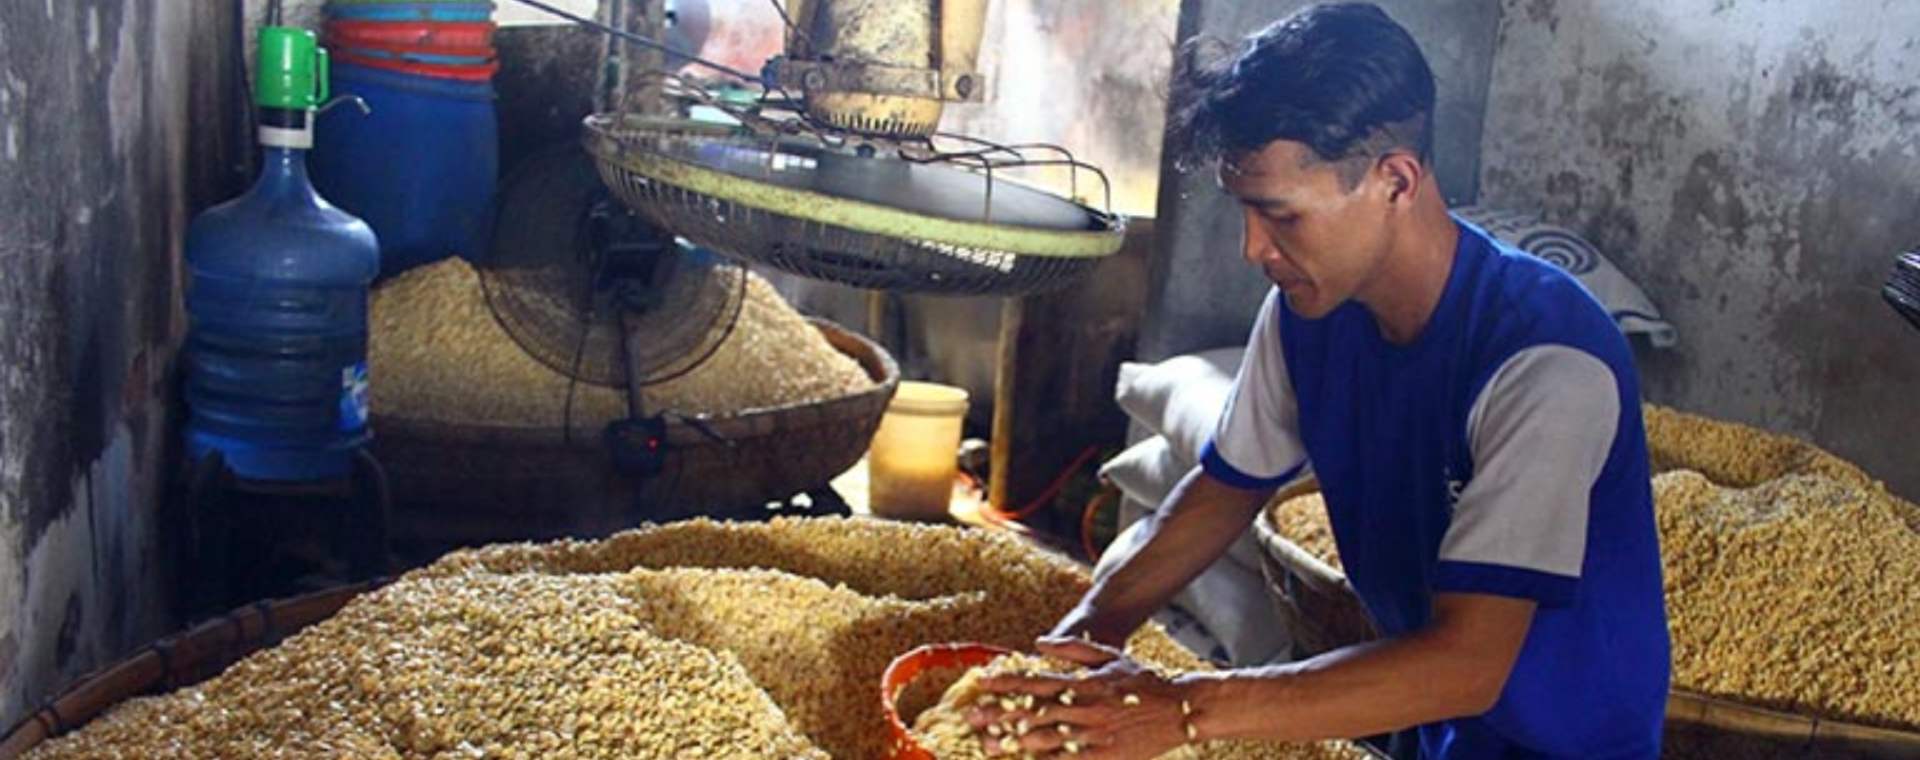 Perajin membuat tempe berbahan baku kedelai impor yang kini harganya naik dari Rp9.600 menjadi Rp10.300 per kilogram di sentra perajin tempe di Sanan, Malang, Jawa Timur, Selasa (11/1 - 2022). ANTARA FOTO / Ari Bowo Sucipto